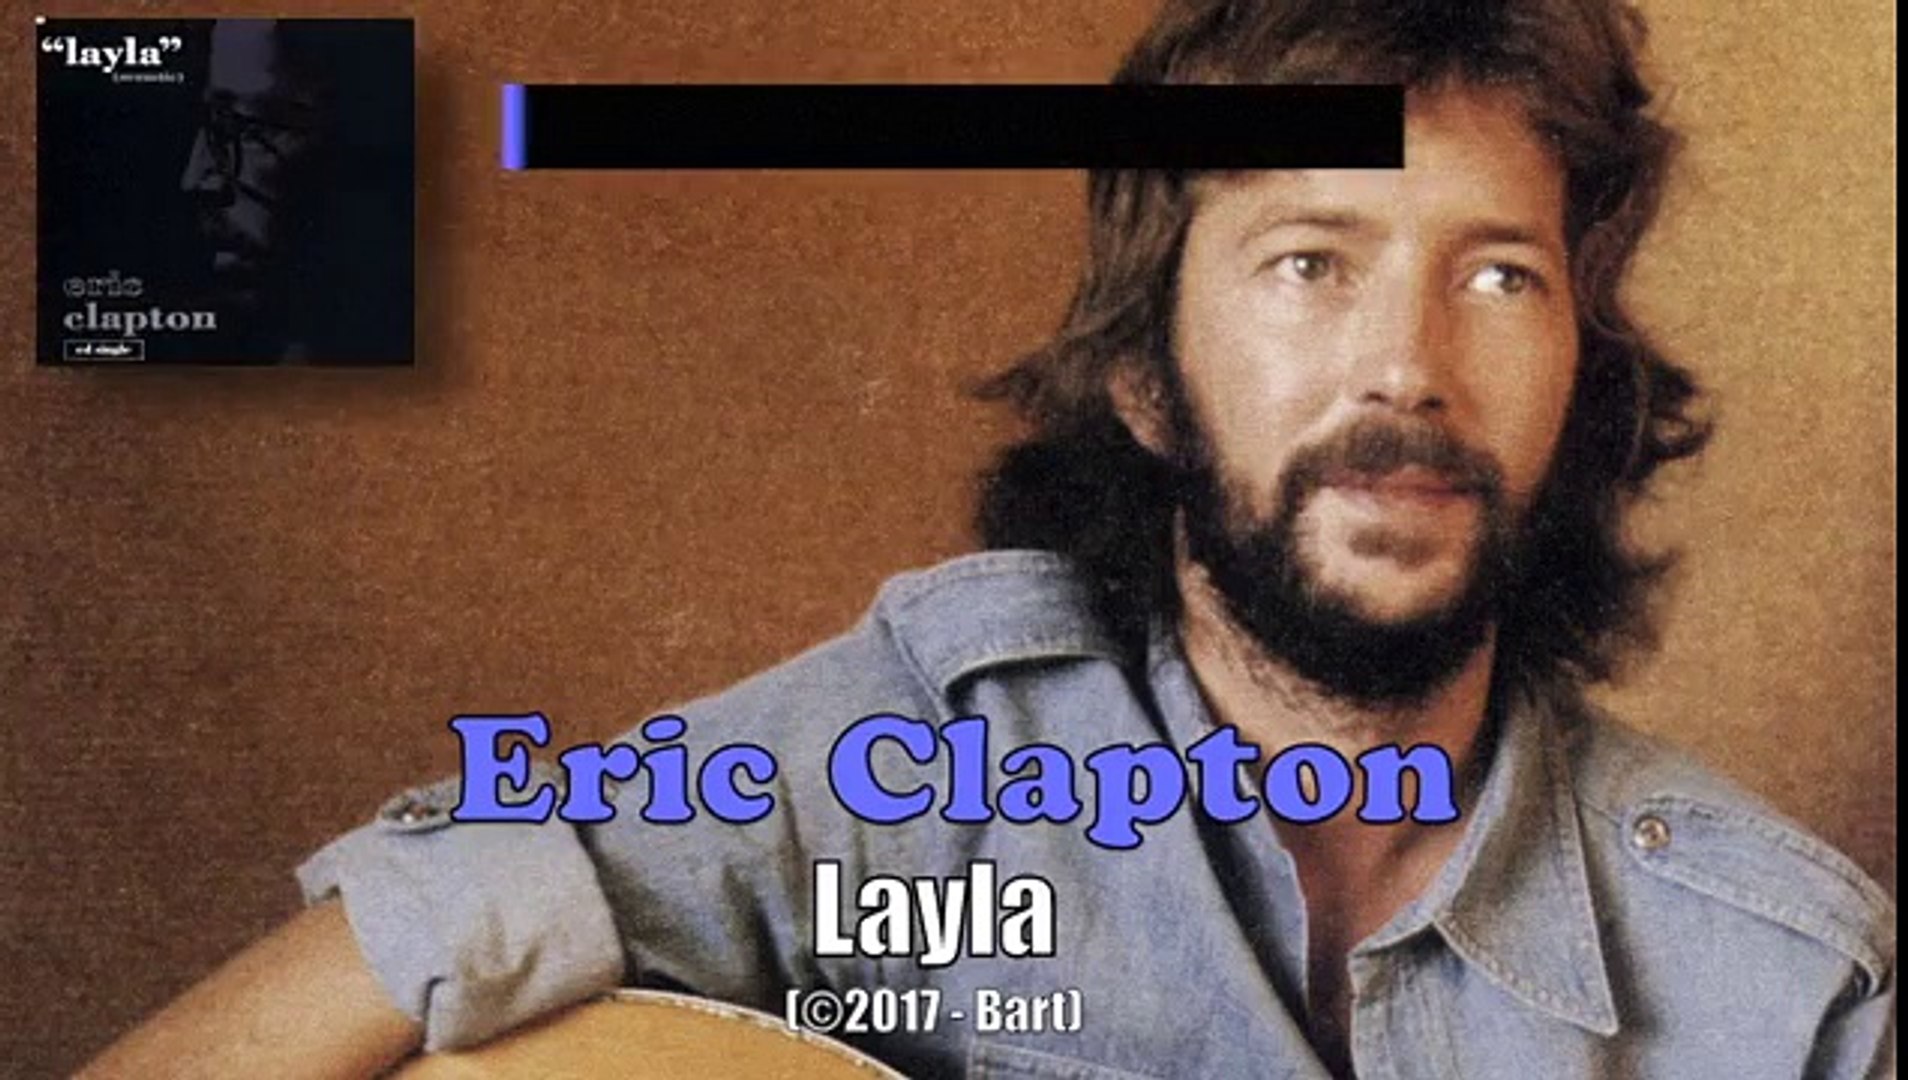 Elegante orificio de soplado sonrojo Eric Clapton - Layla KARAOKE / INSTRUMENTAL - Vidéo Dailymotion